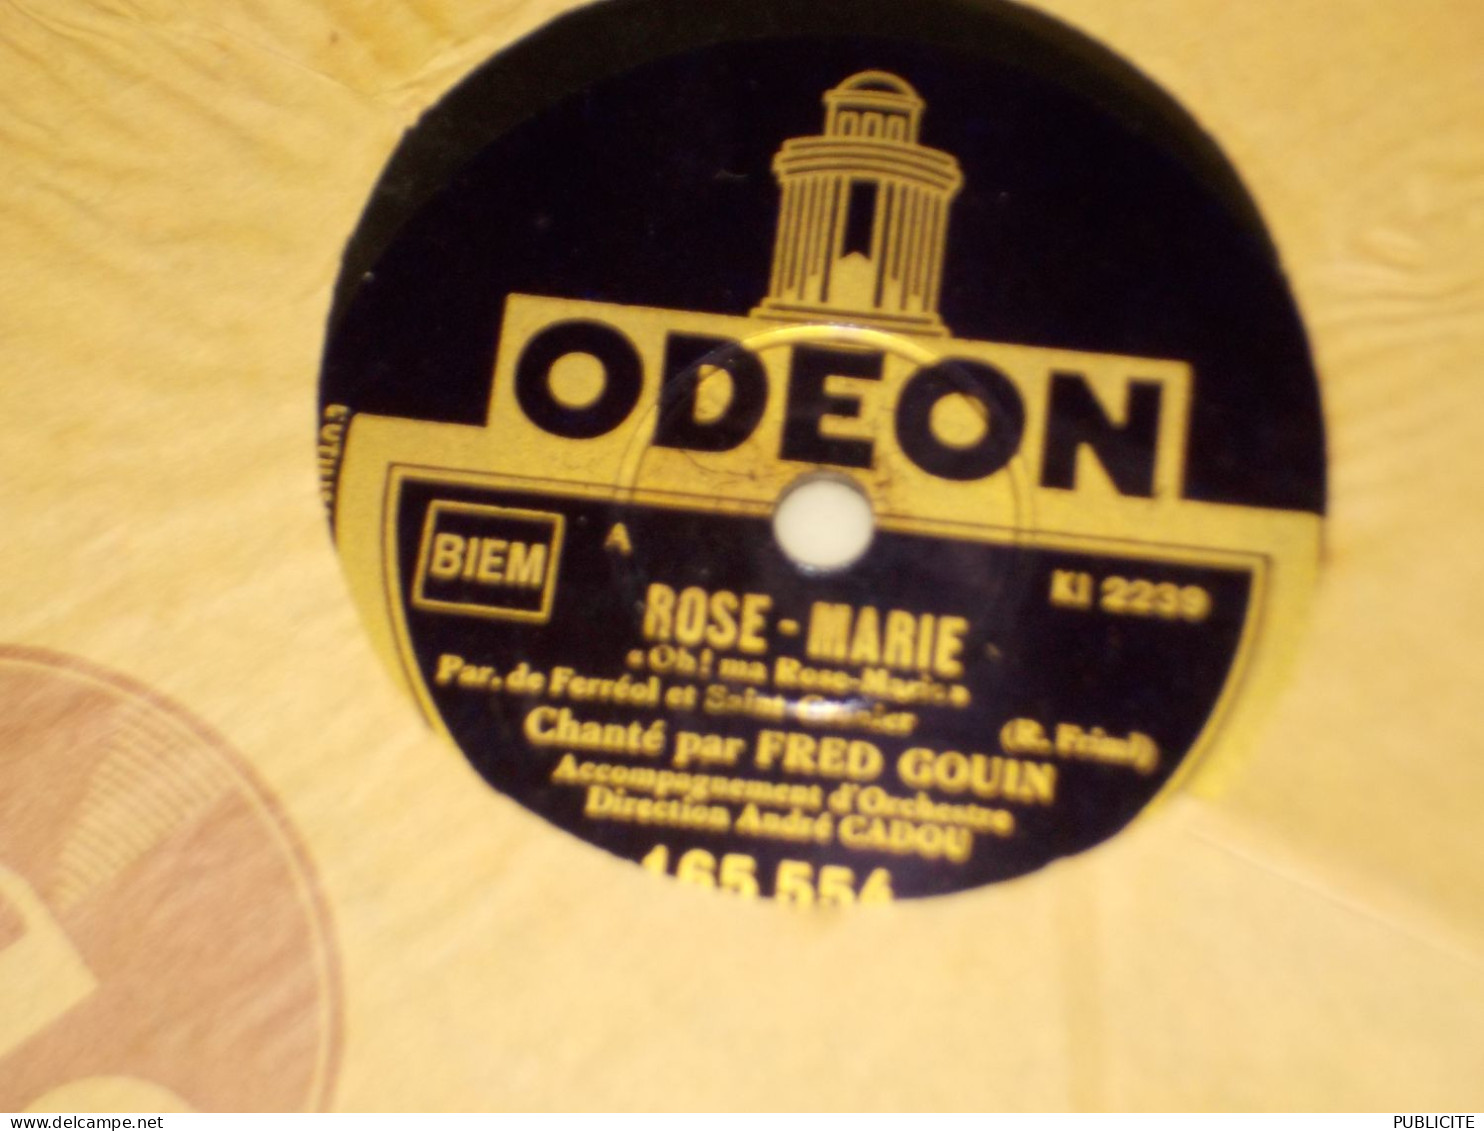 DISQUE 78 TOURS VINYL CHANTE PAR FRED GOUIN 1927 - 78 T - Disques Pour Gramophone